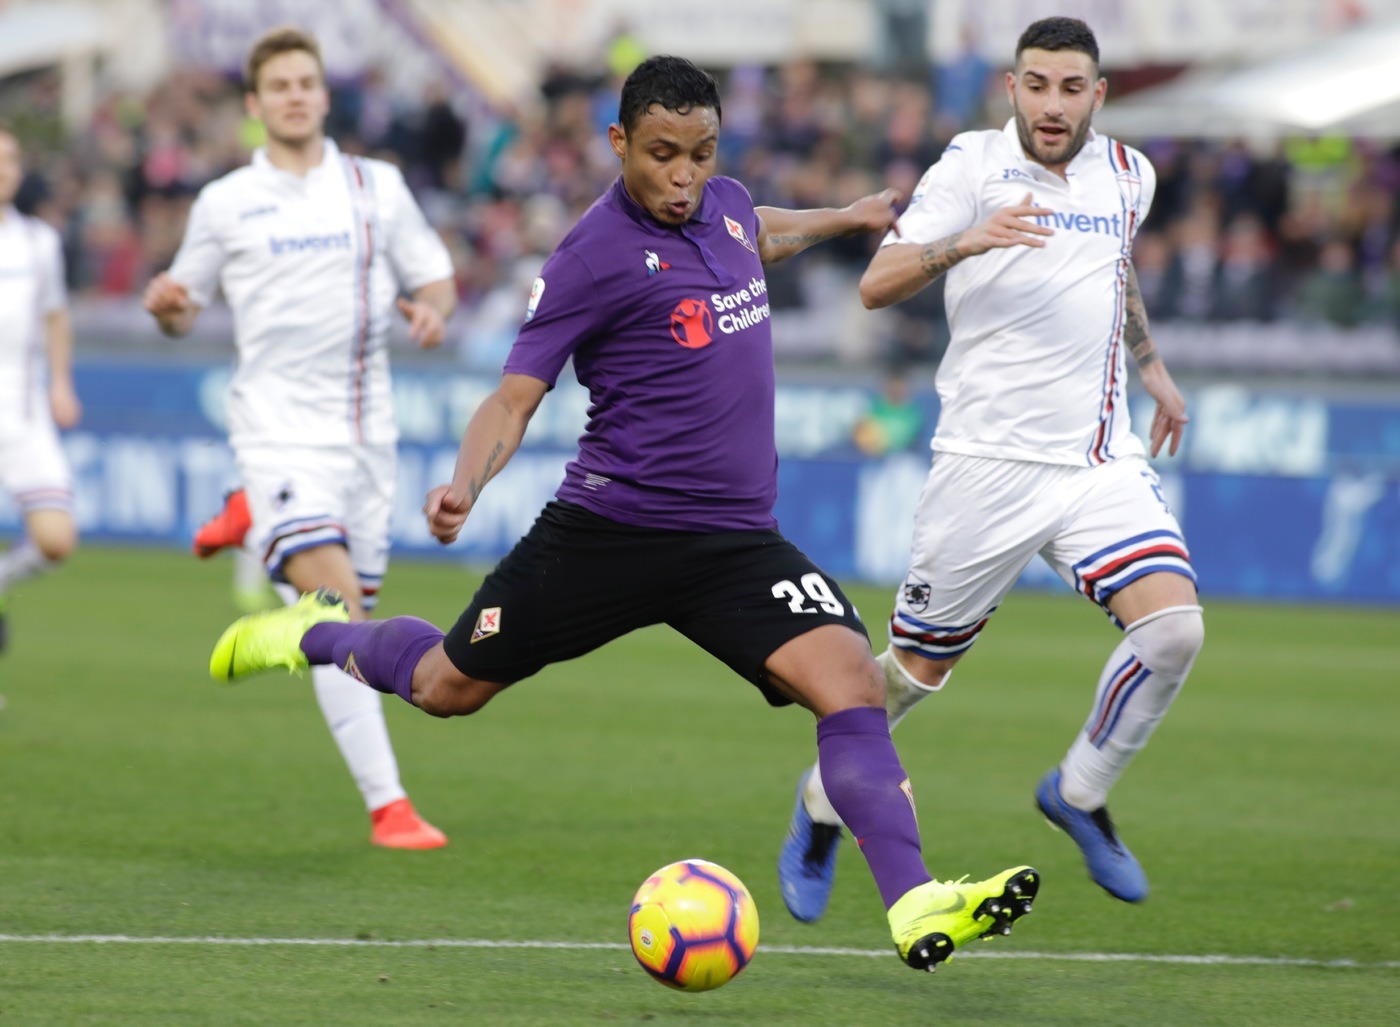 Serie A, Chievo-Fiorentina 27 gennaio: analisi e pronostico della giornata della massima divisione calcistica italiana